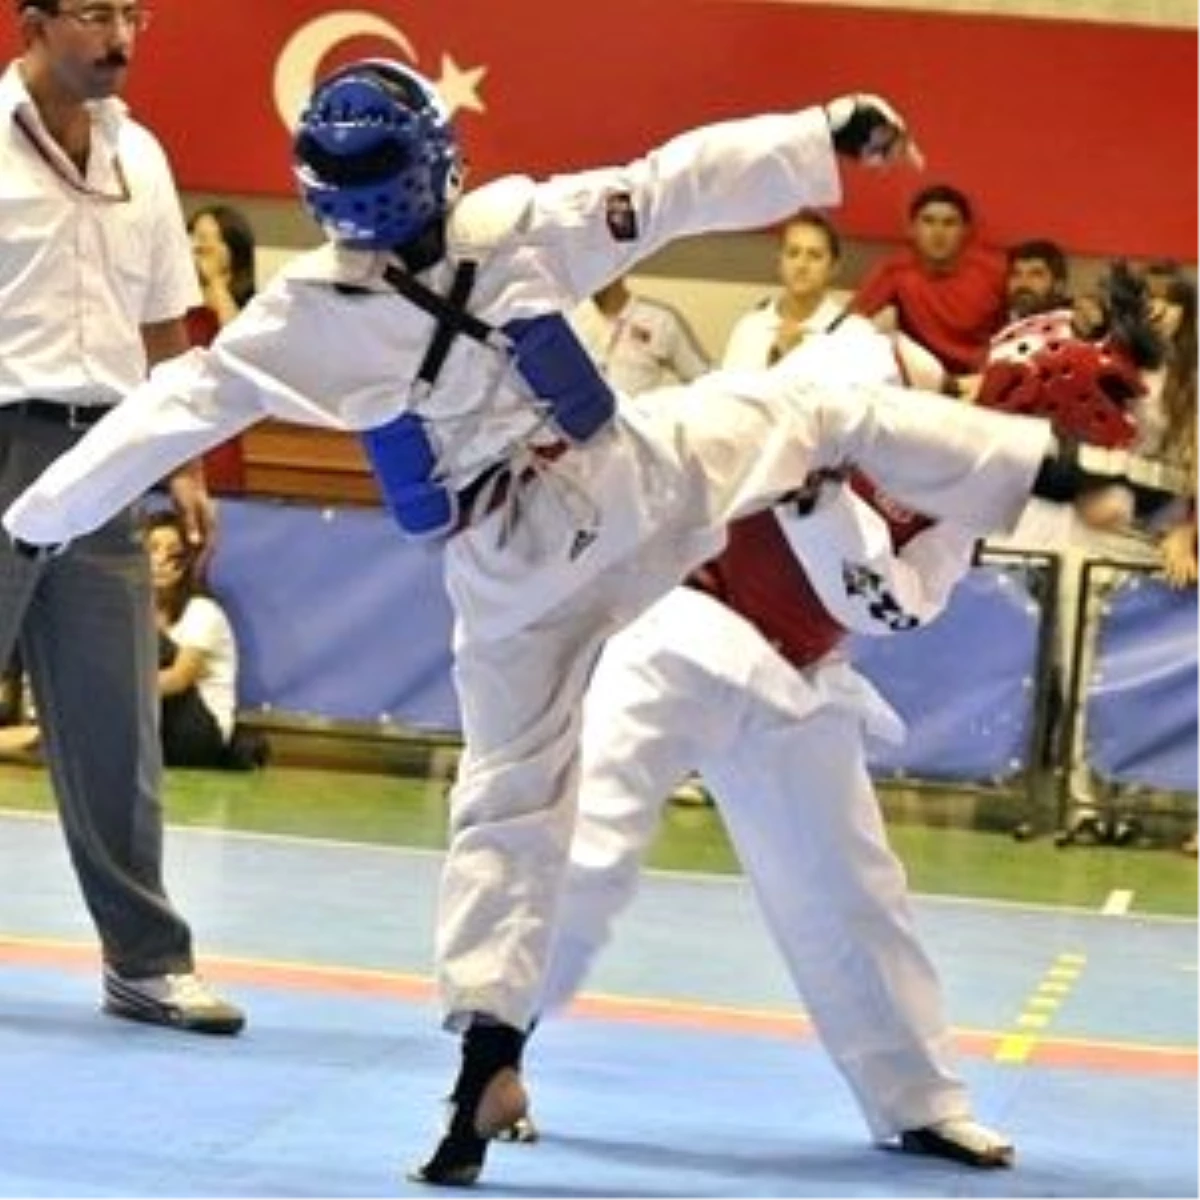 İl Özel İdare Taekwondo Takımı Antalya Kampında